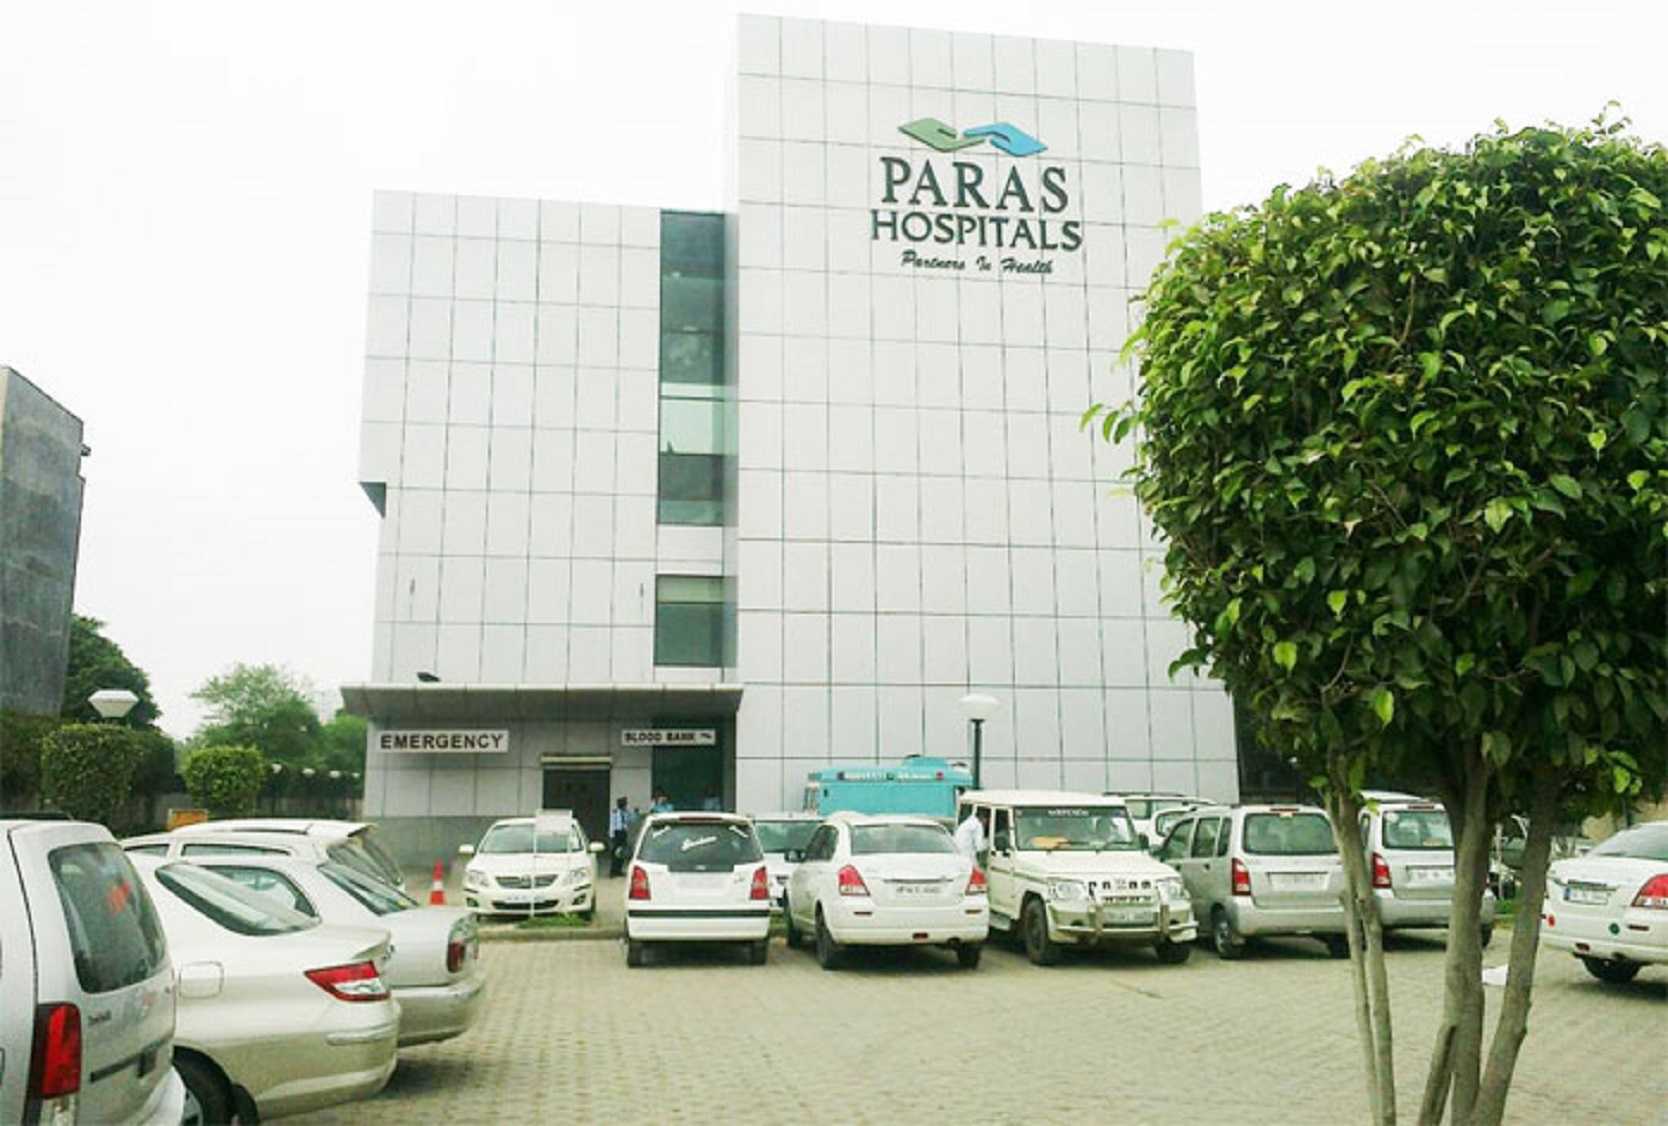 Paras Hospitals Haryana, India